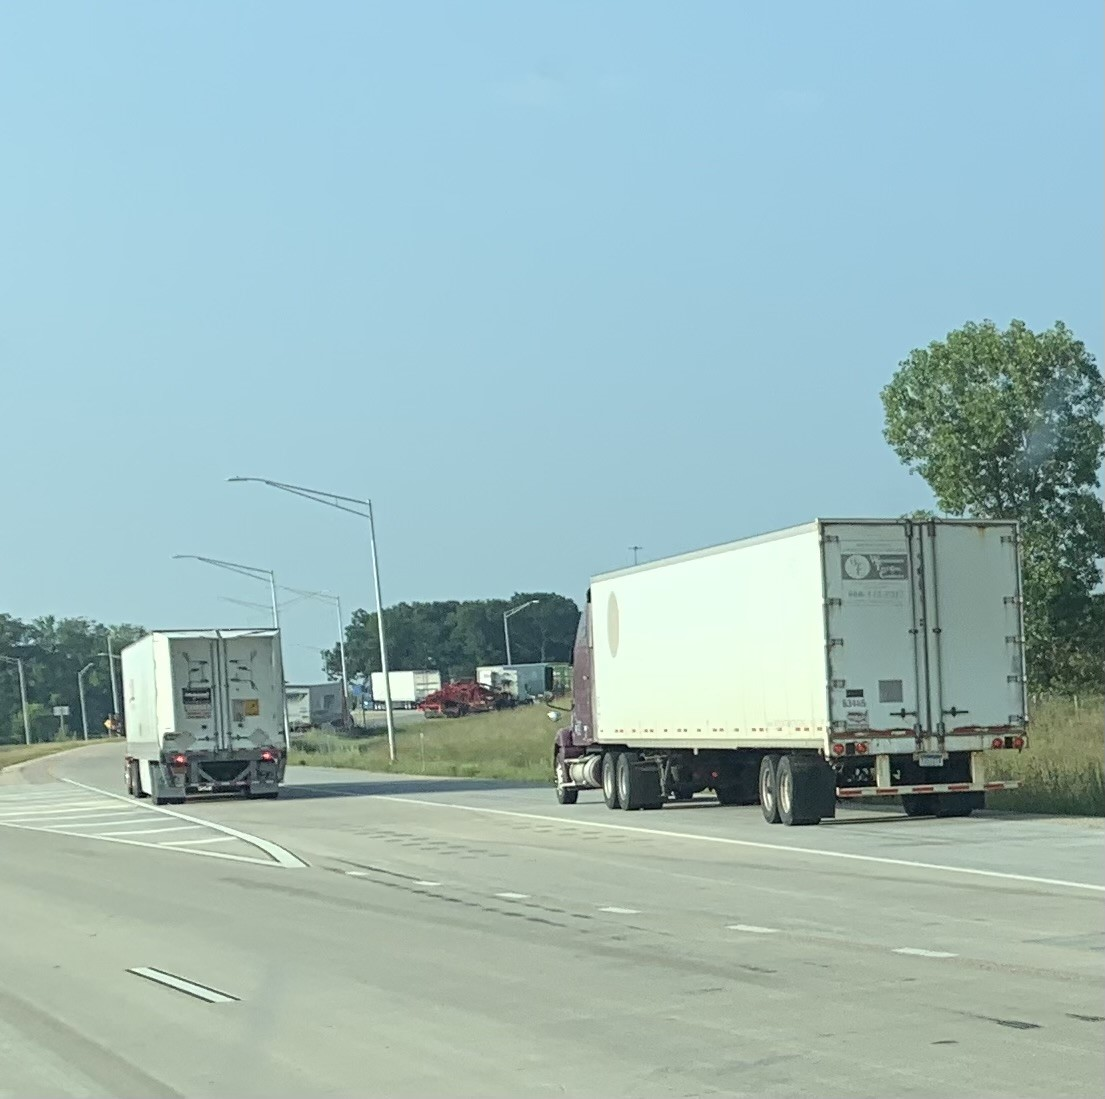 Image of 2 trucks on road